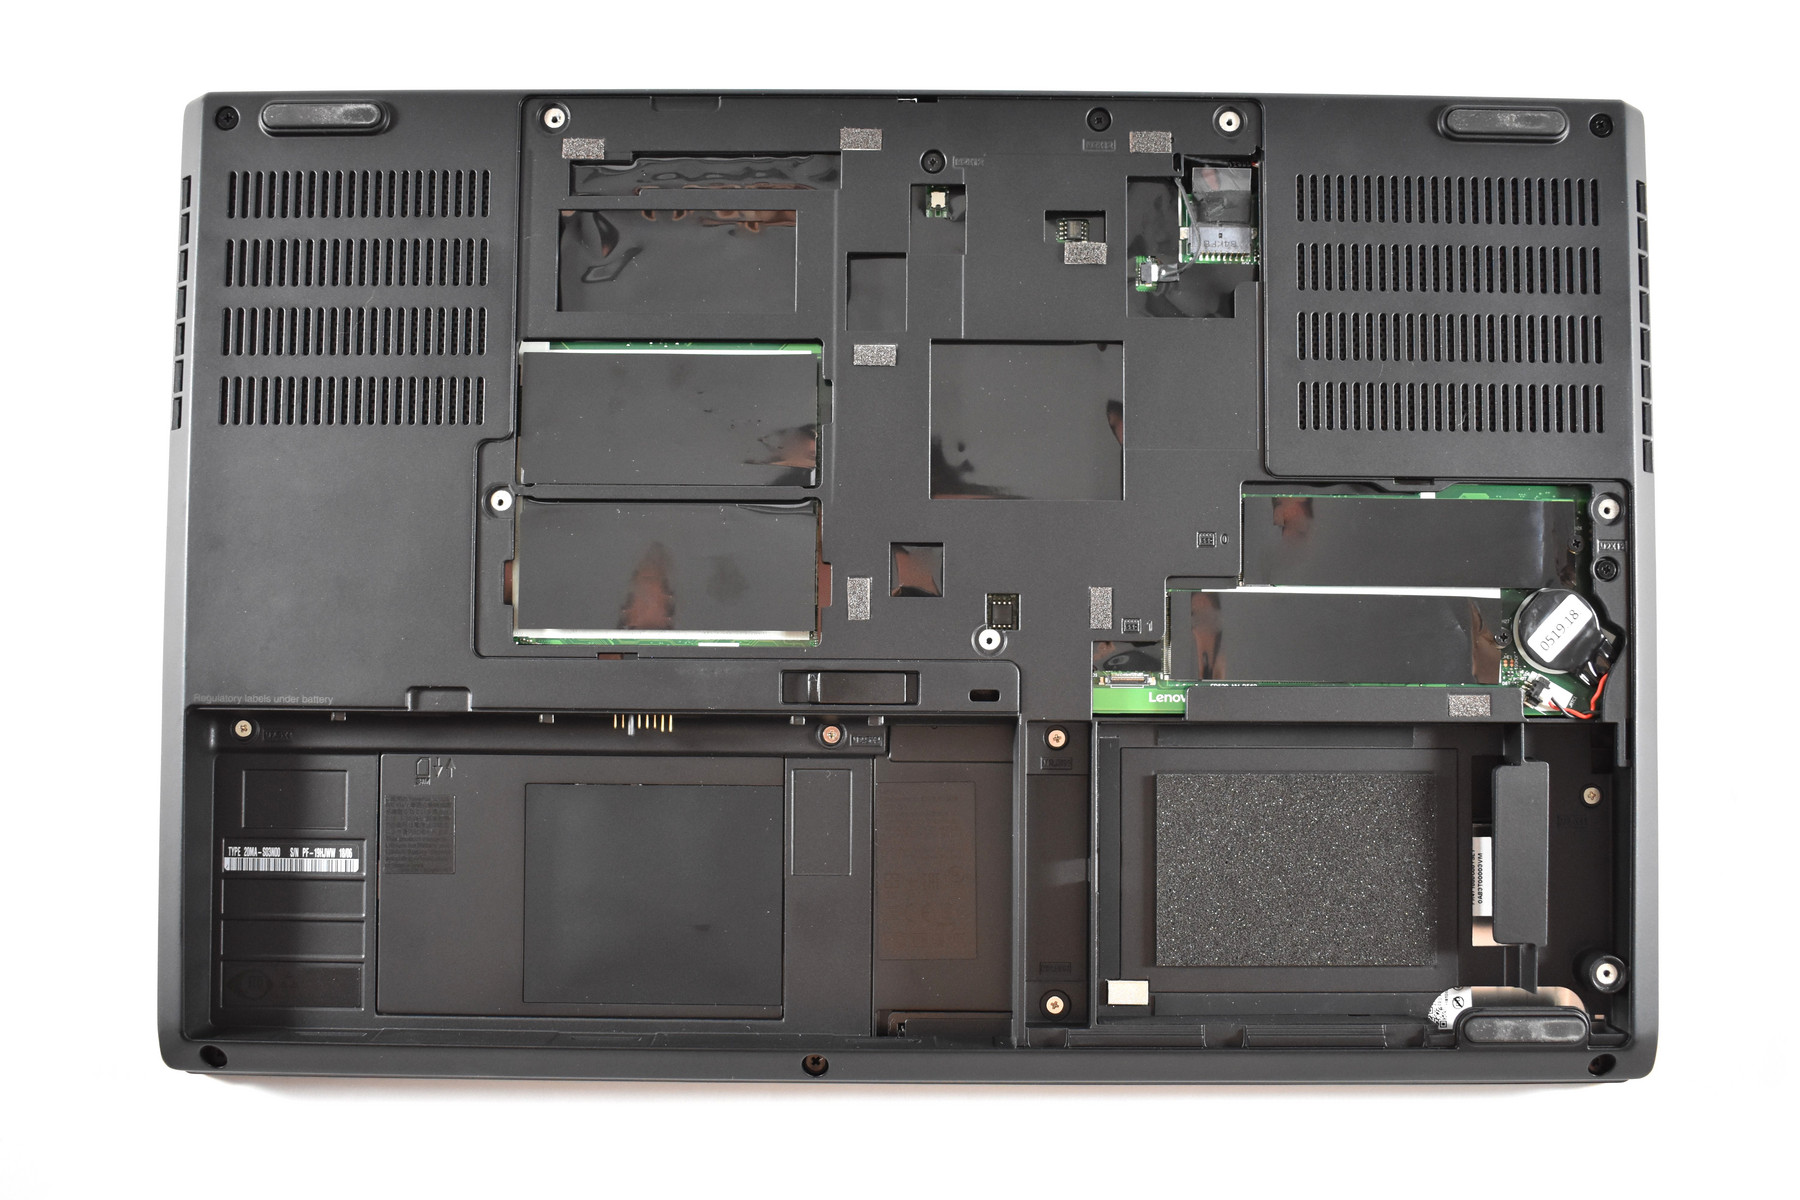 Lenovo Thinkpad P52 - Workstation Chuyên Nghiệp cho đồ họa